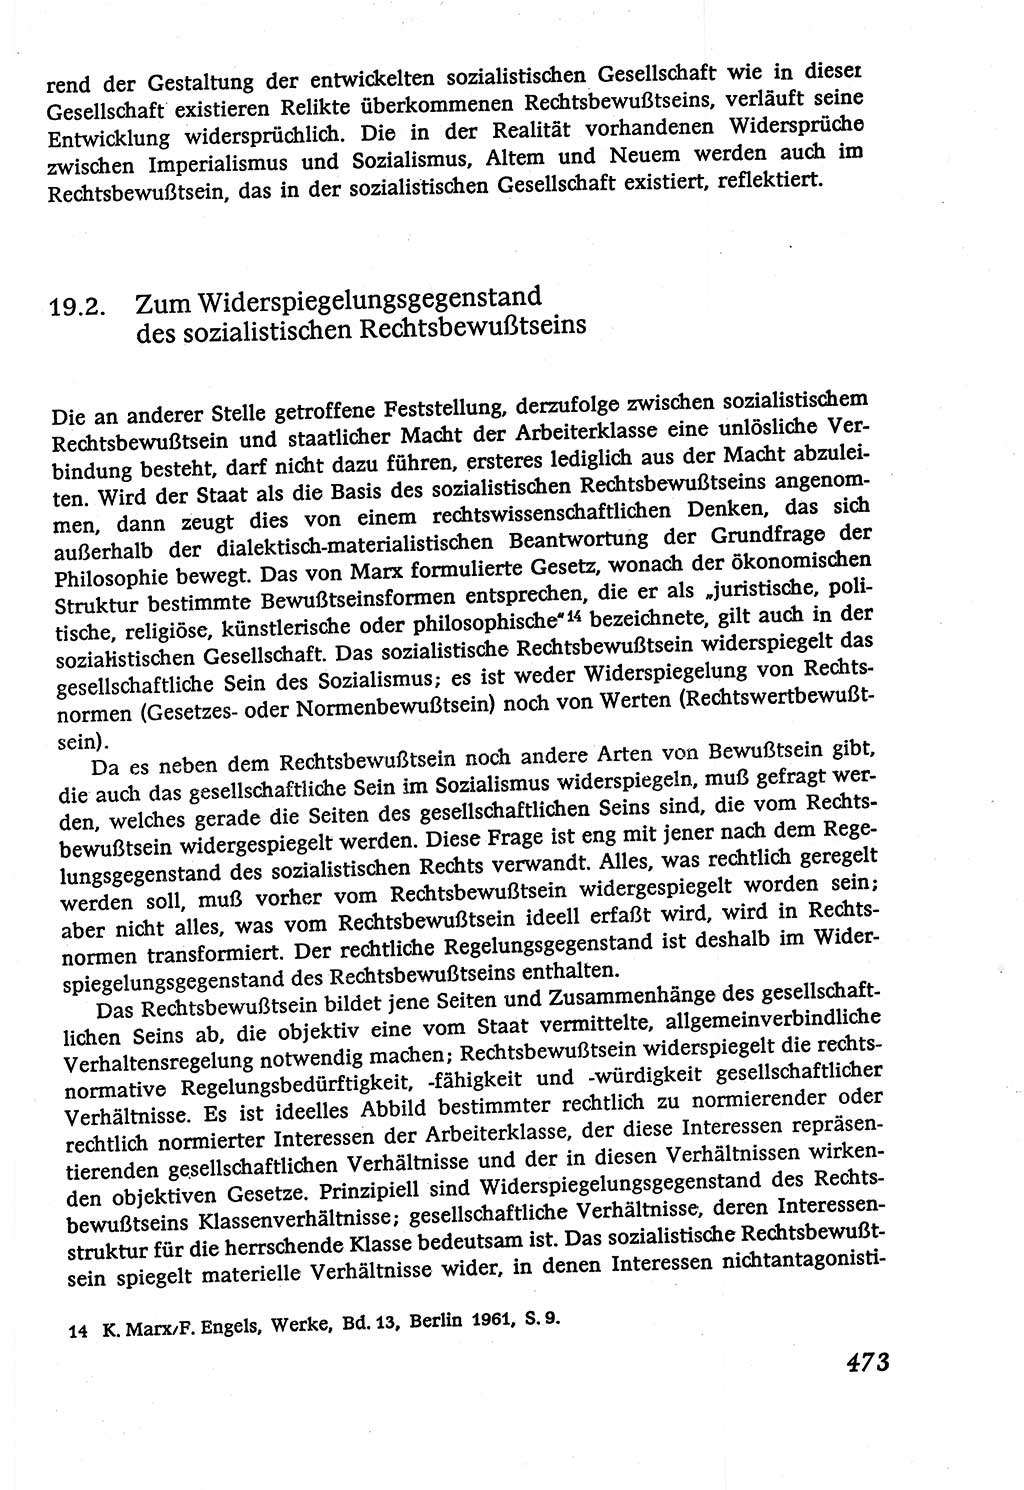 Marxistisch-leninistische (ML) Staats- und Rechtstheorie [Deutsche Demokratische Republik (DDR)], Lehrbuch 1980, Seite 473 (ML St.-R.-Th. DDR Lb. 1980, S. 473)